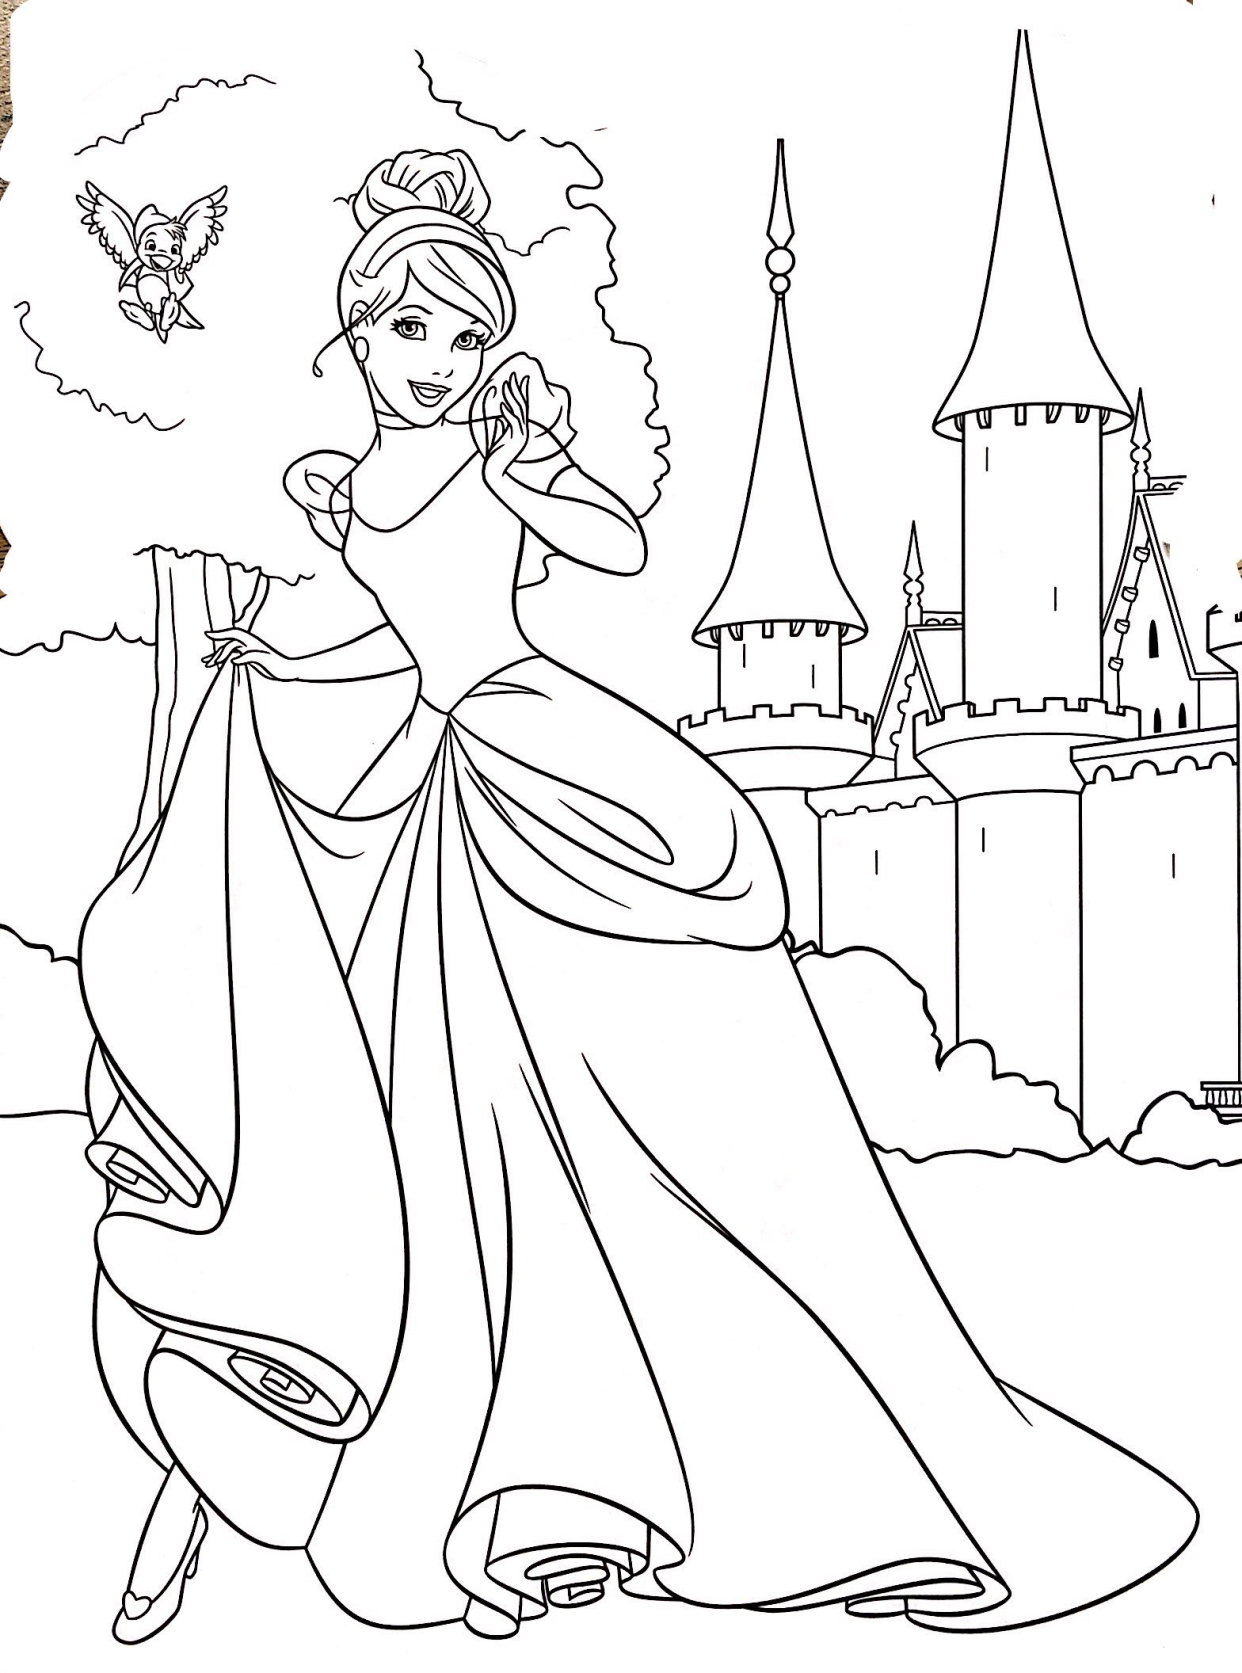 迪士尼公主的画法图片